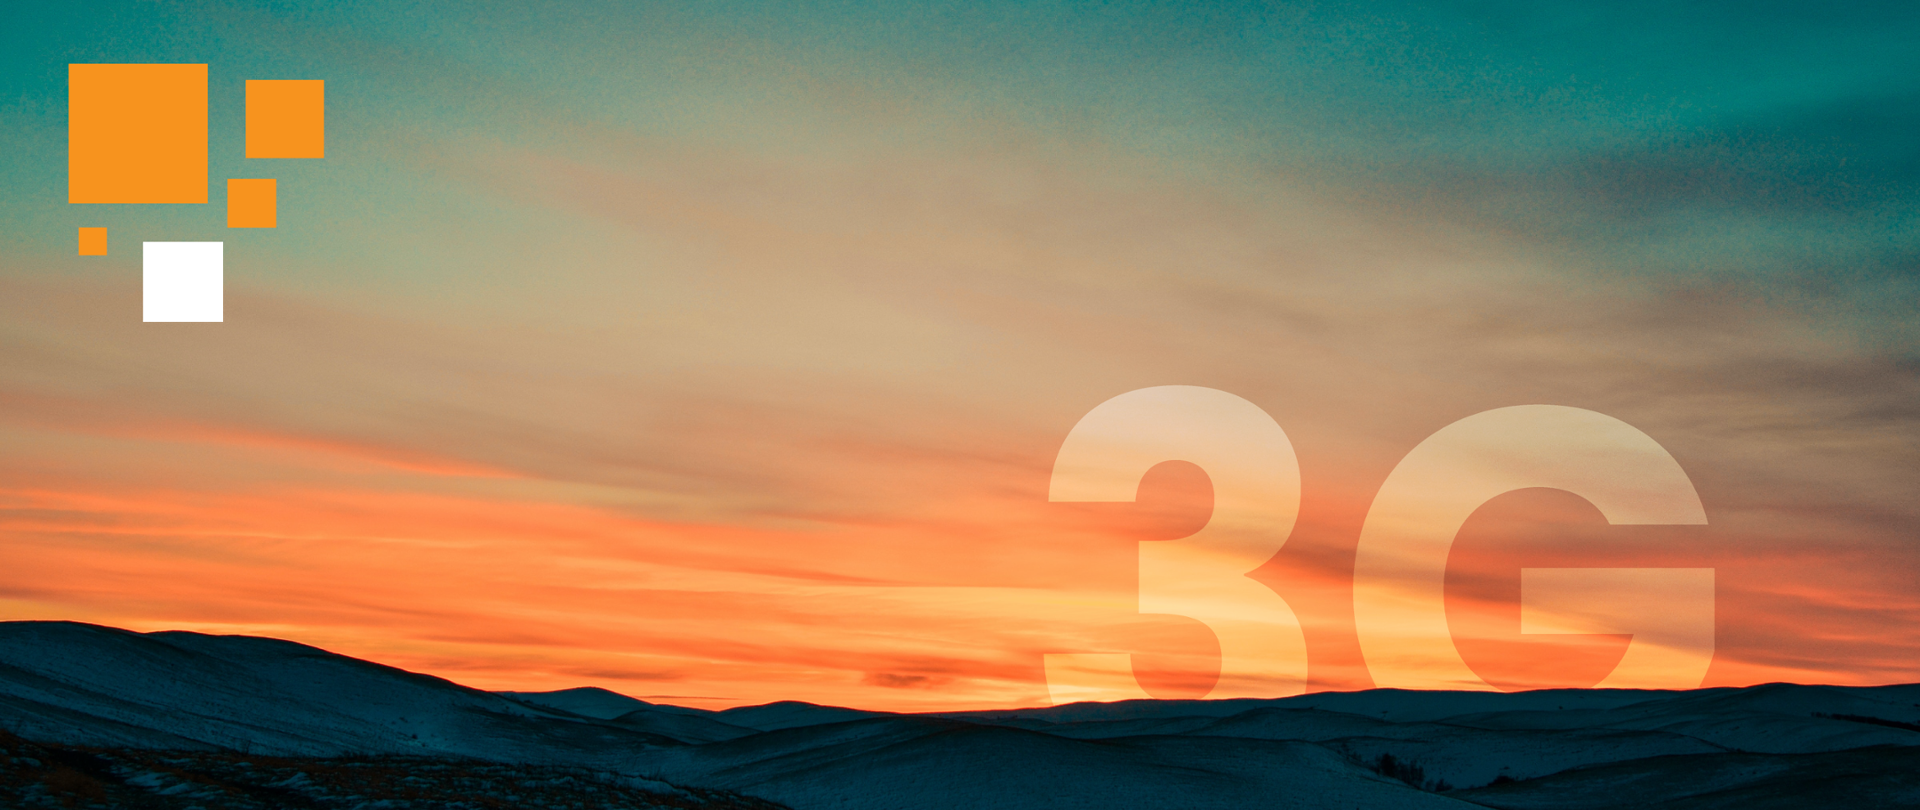 Grafika przedstawia zabarwione na pomarańczowo niebo nad górami tuż po zachodzie słońca. Za horyzontem chowa się półprzezroczysty napis 3G.